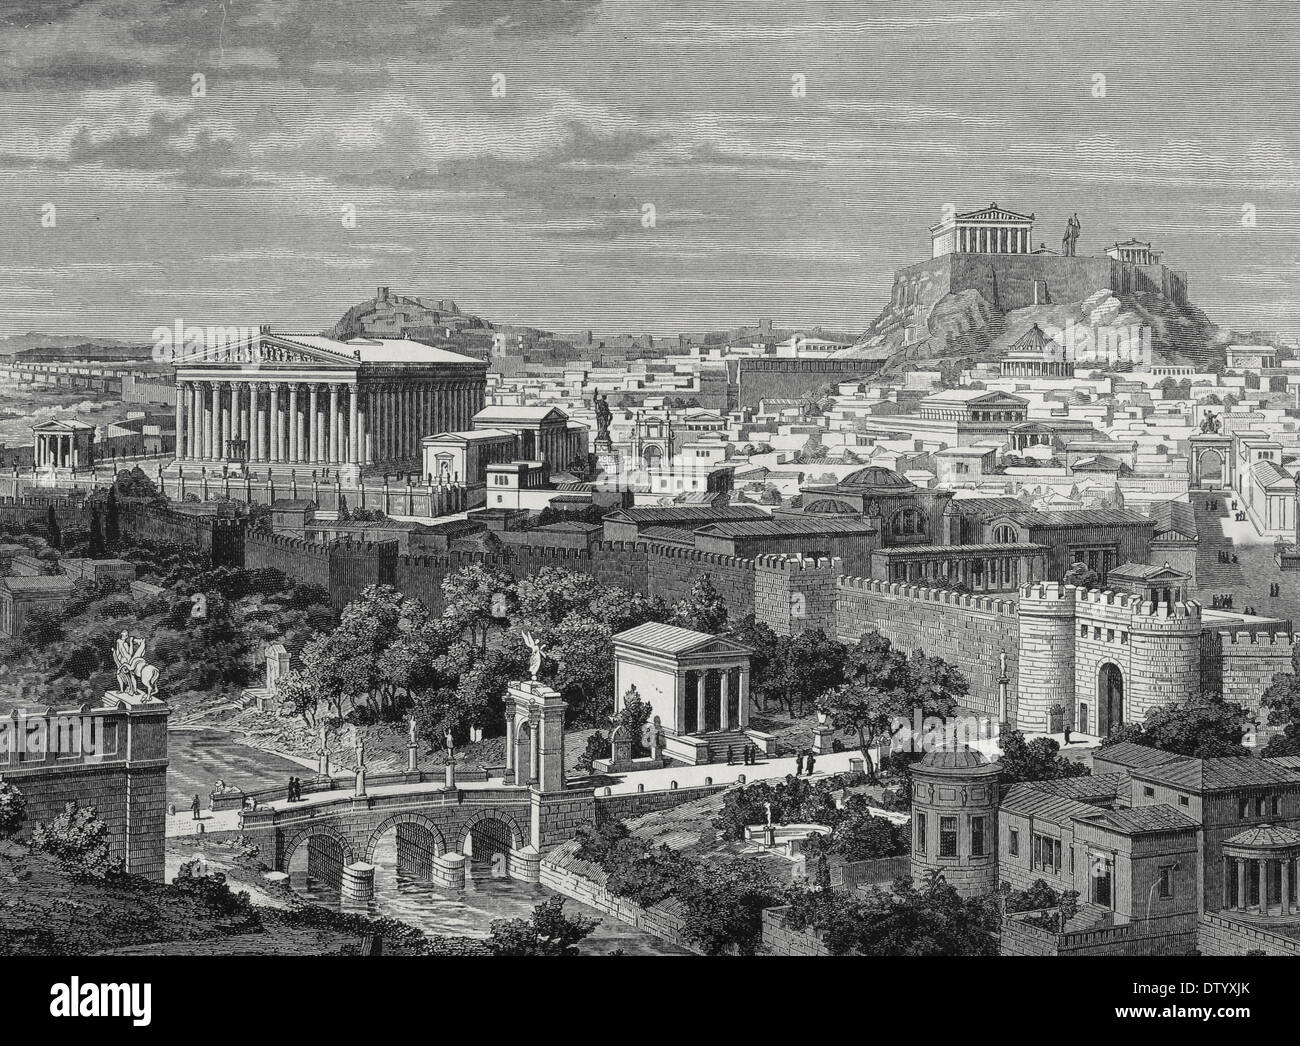 Grecia. Atenas, en el siglo I AC. Grabado. Color. Siglo xix. Foto de stock